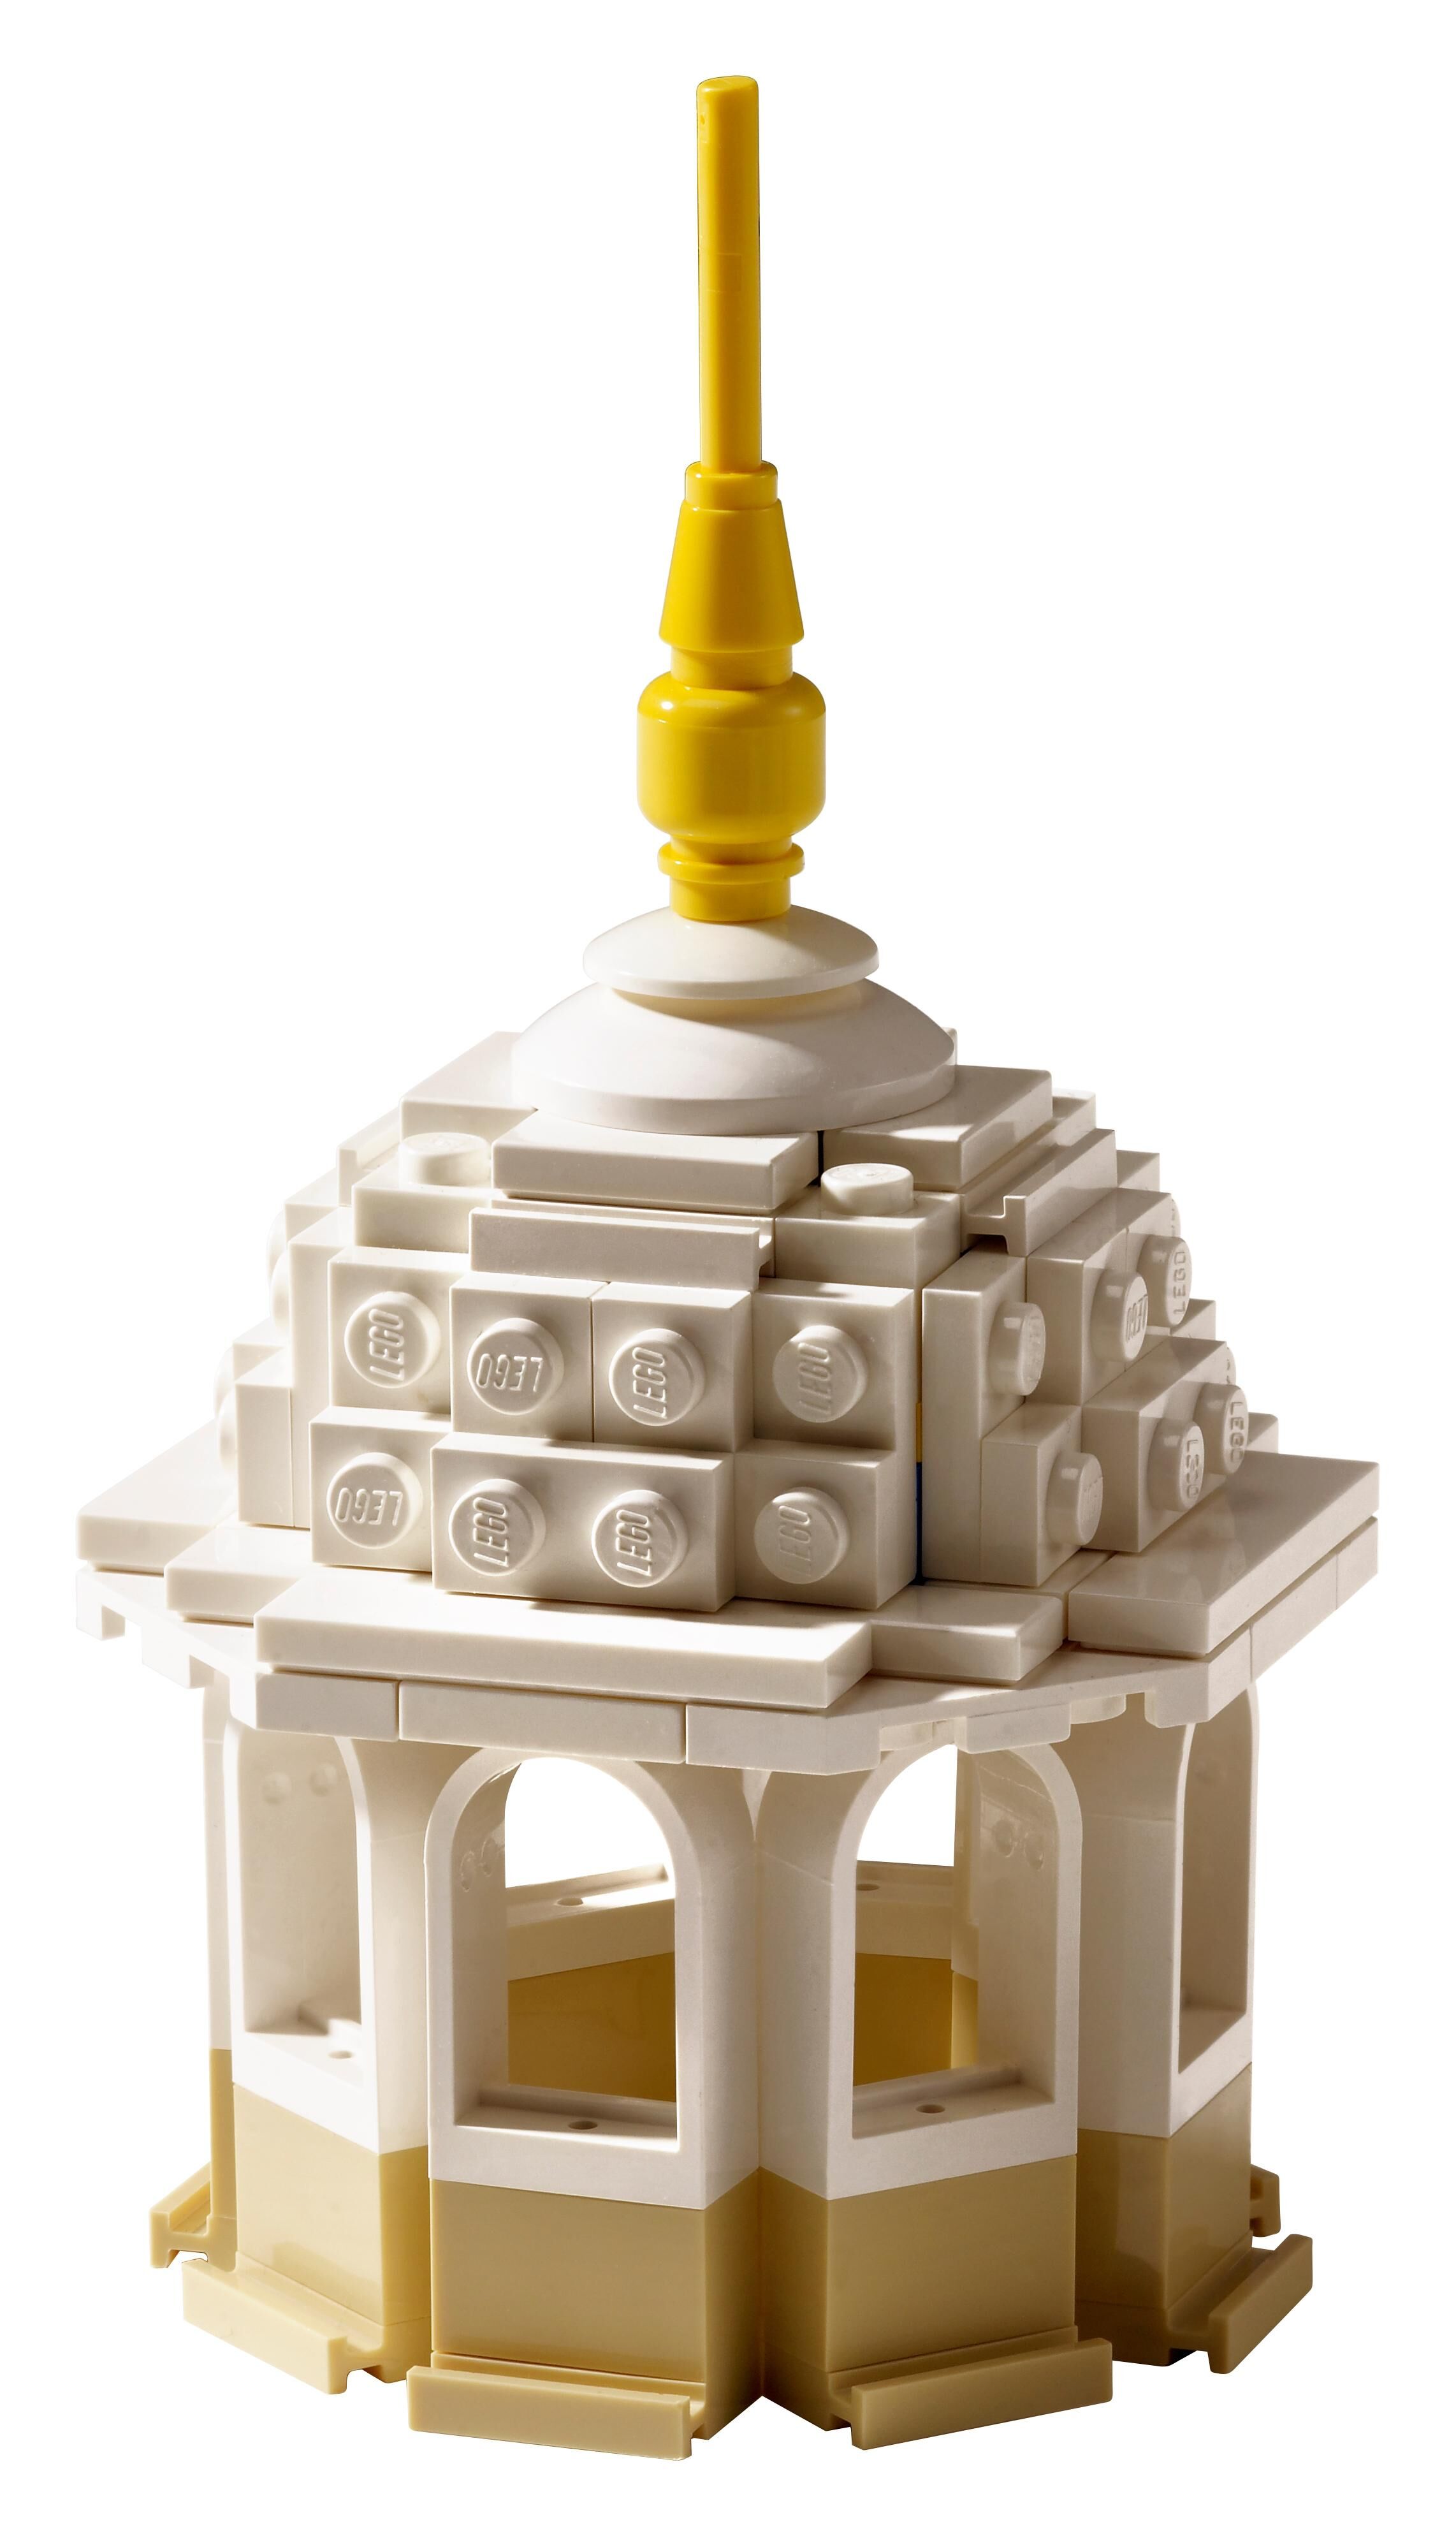 LEGO Set 10256-1 Taj Mahal (2017 Creator > Creator Expert)